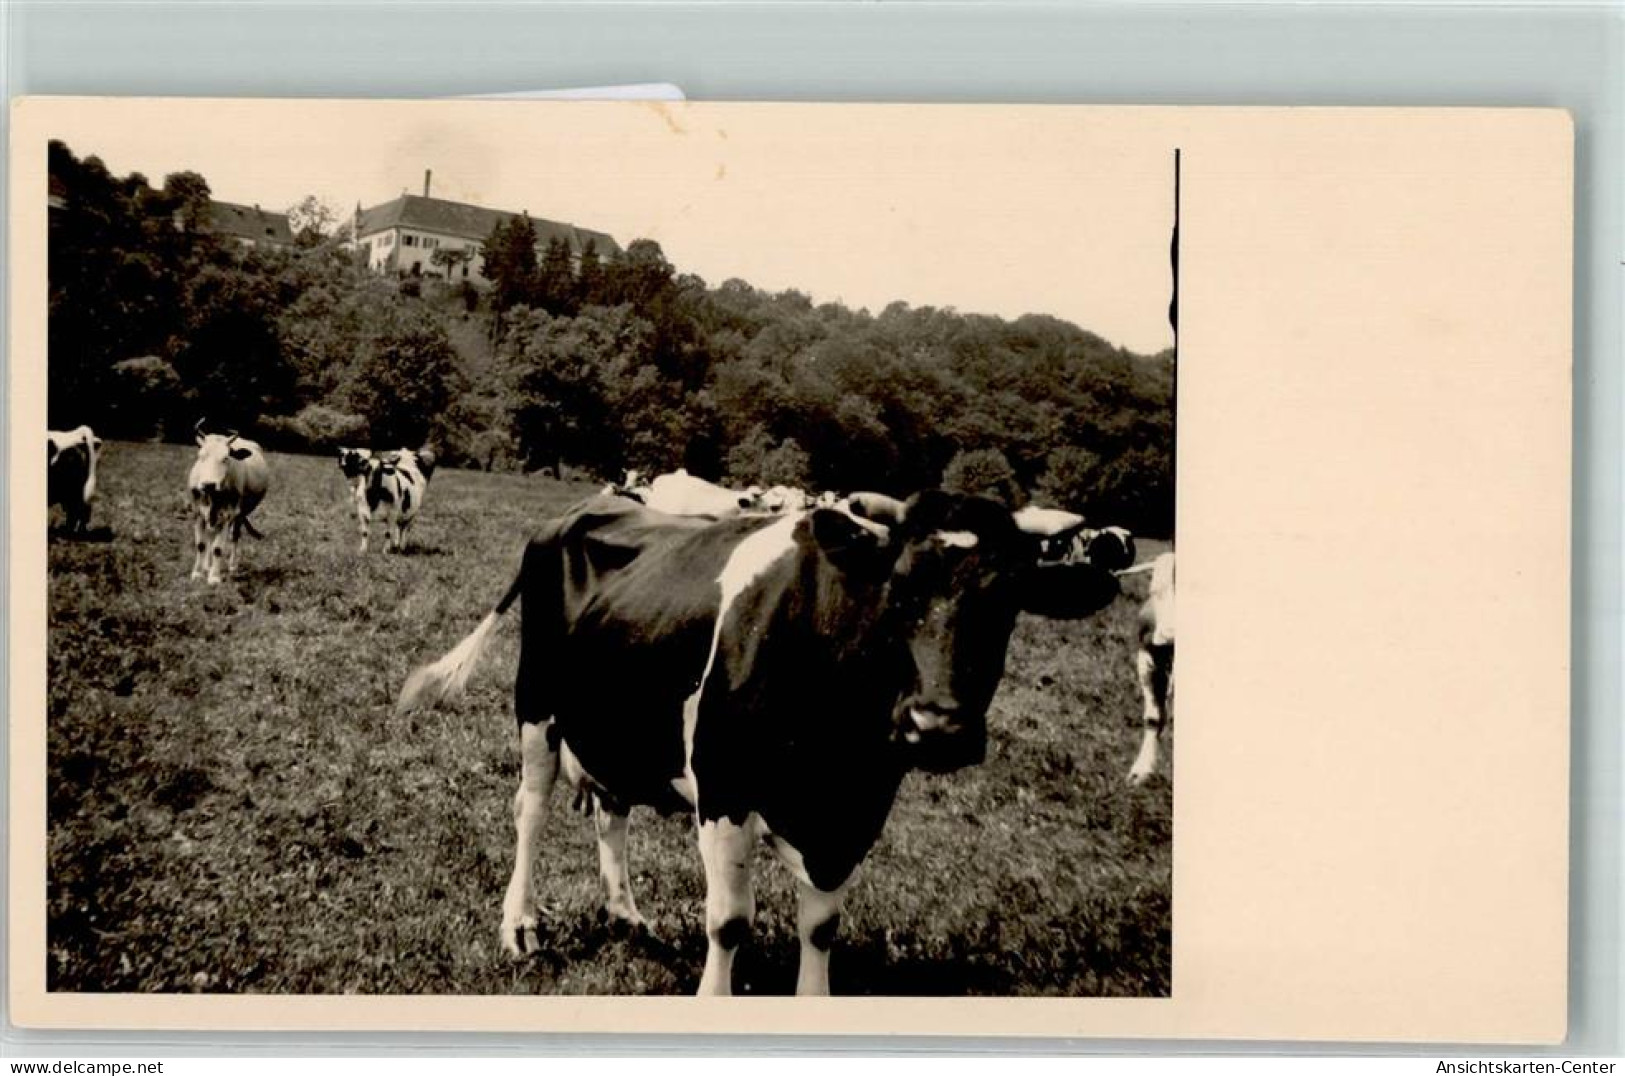 39159207 - - Cows